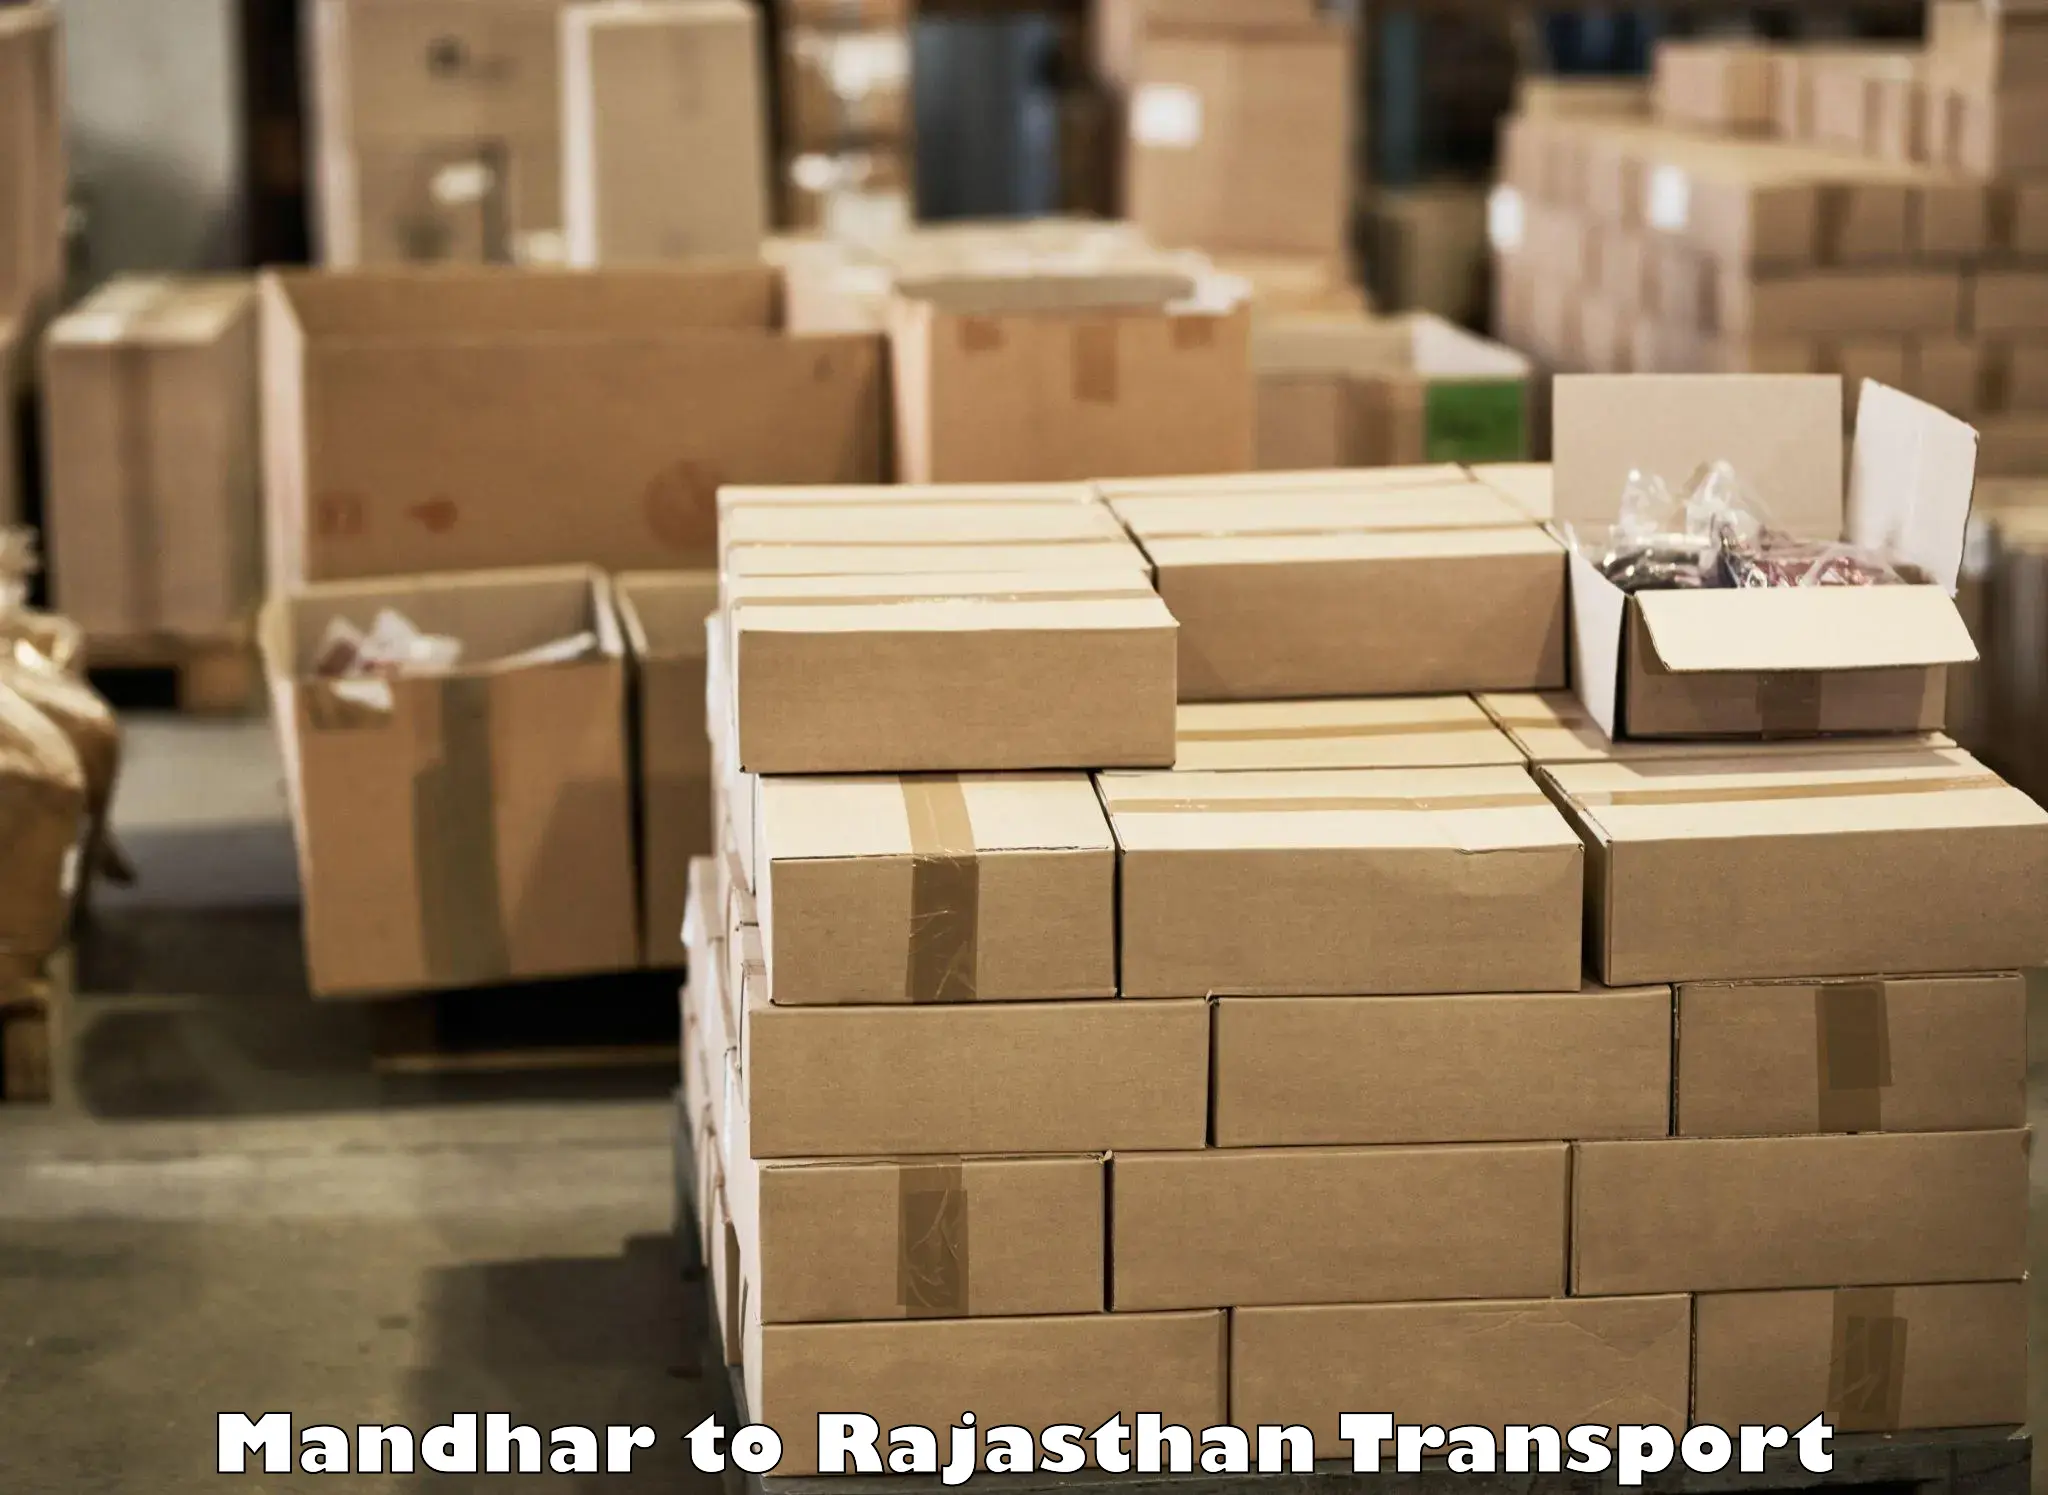 Parcel transport services Mandhar to Shahpura Jaipur